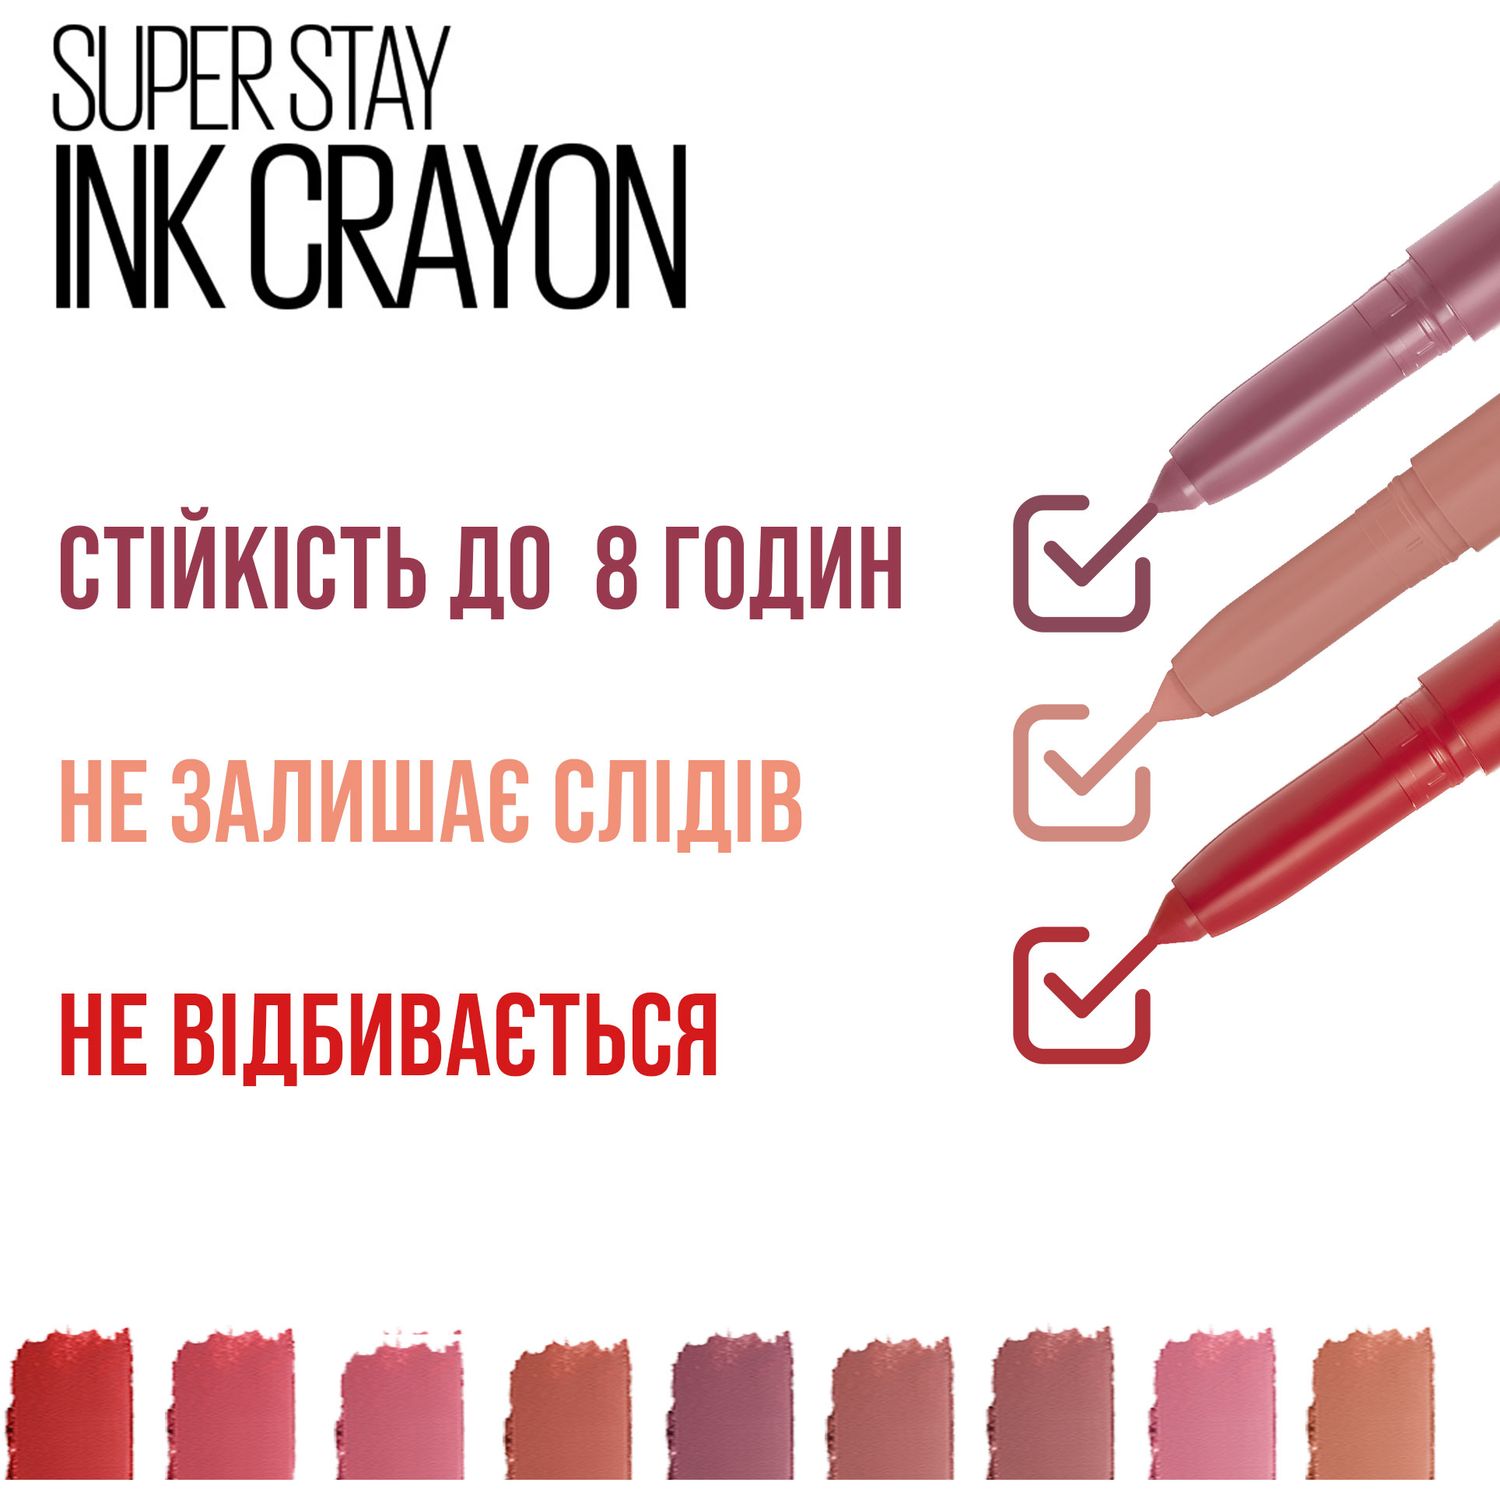 Губна помада-олівець Maybelline New York Super Stay Ink Crayon, відтінок 85 (Пурпурно-рожевий Матовий), 2 г (B3299400) - фото 5